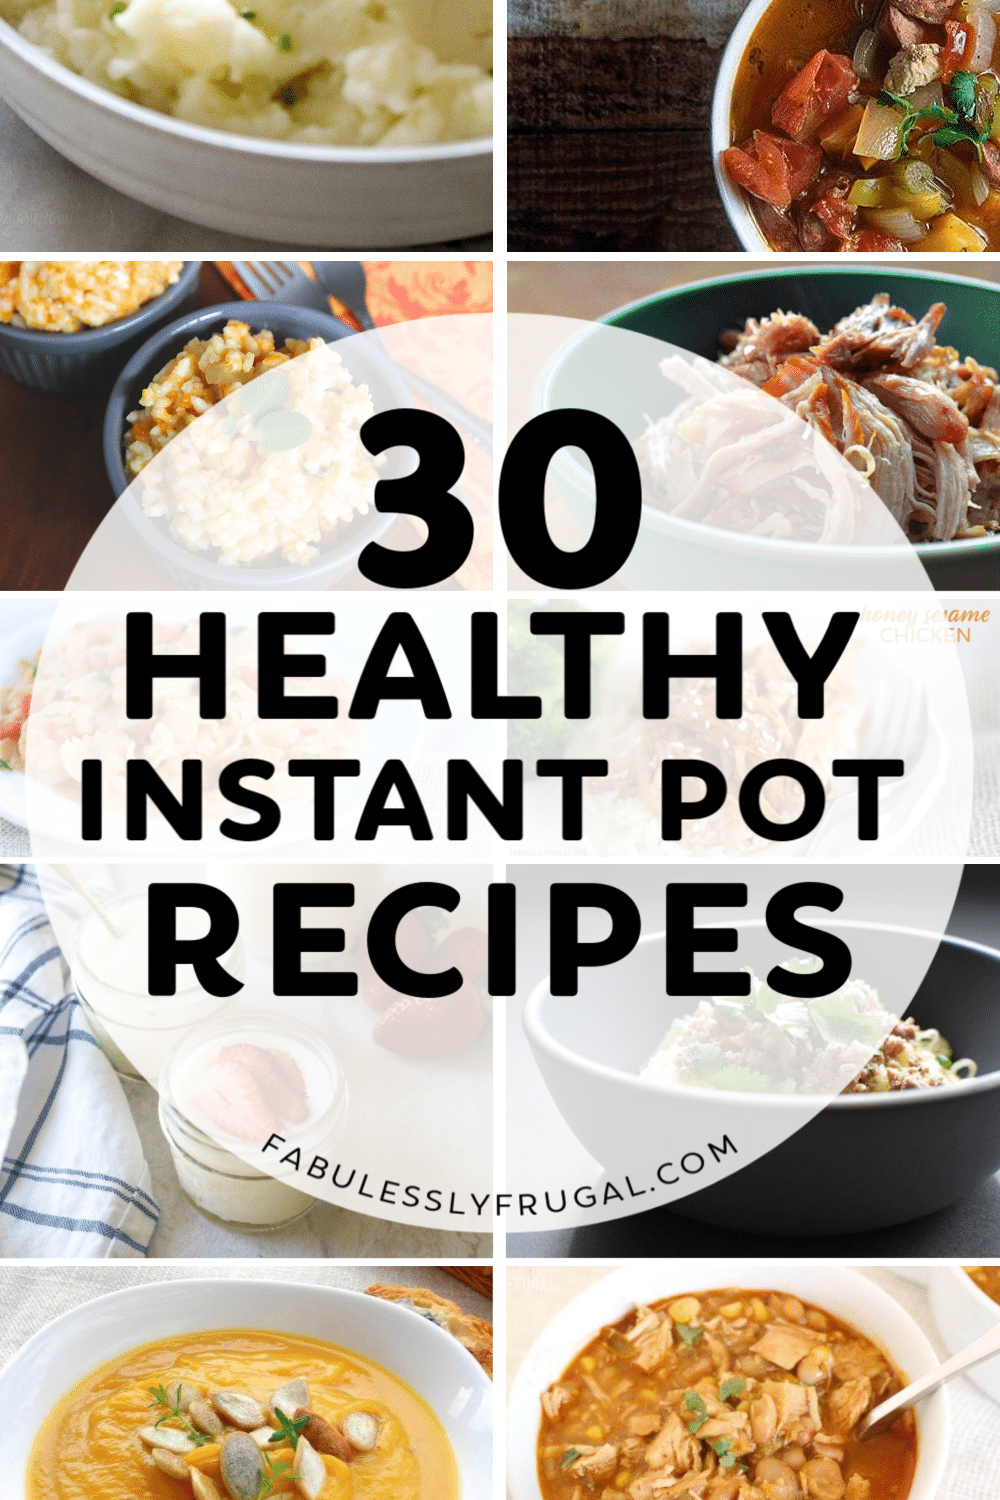 Healthy instant pot recipes